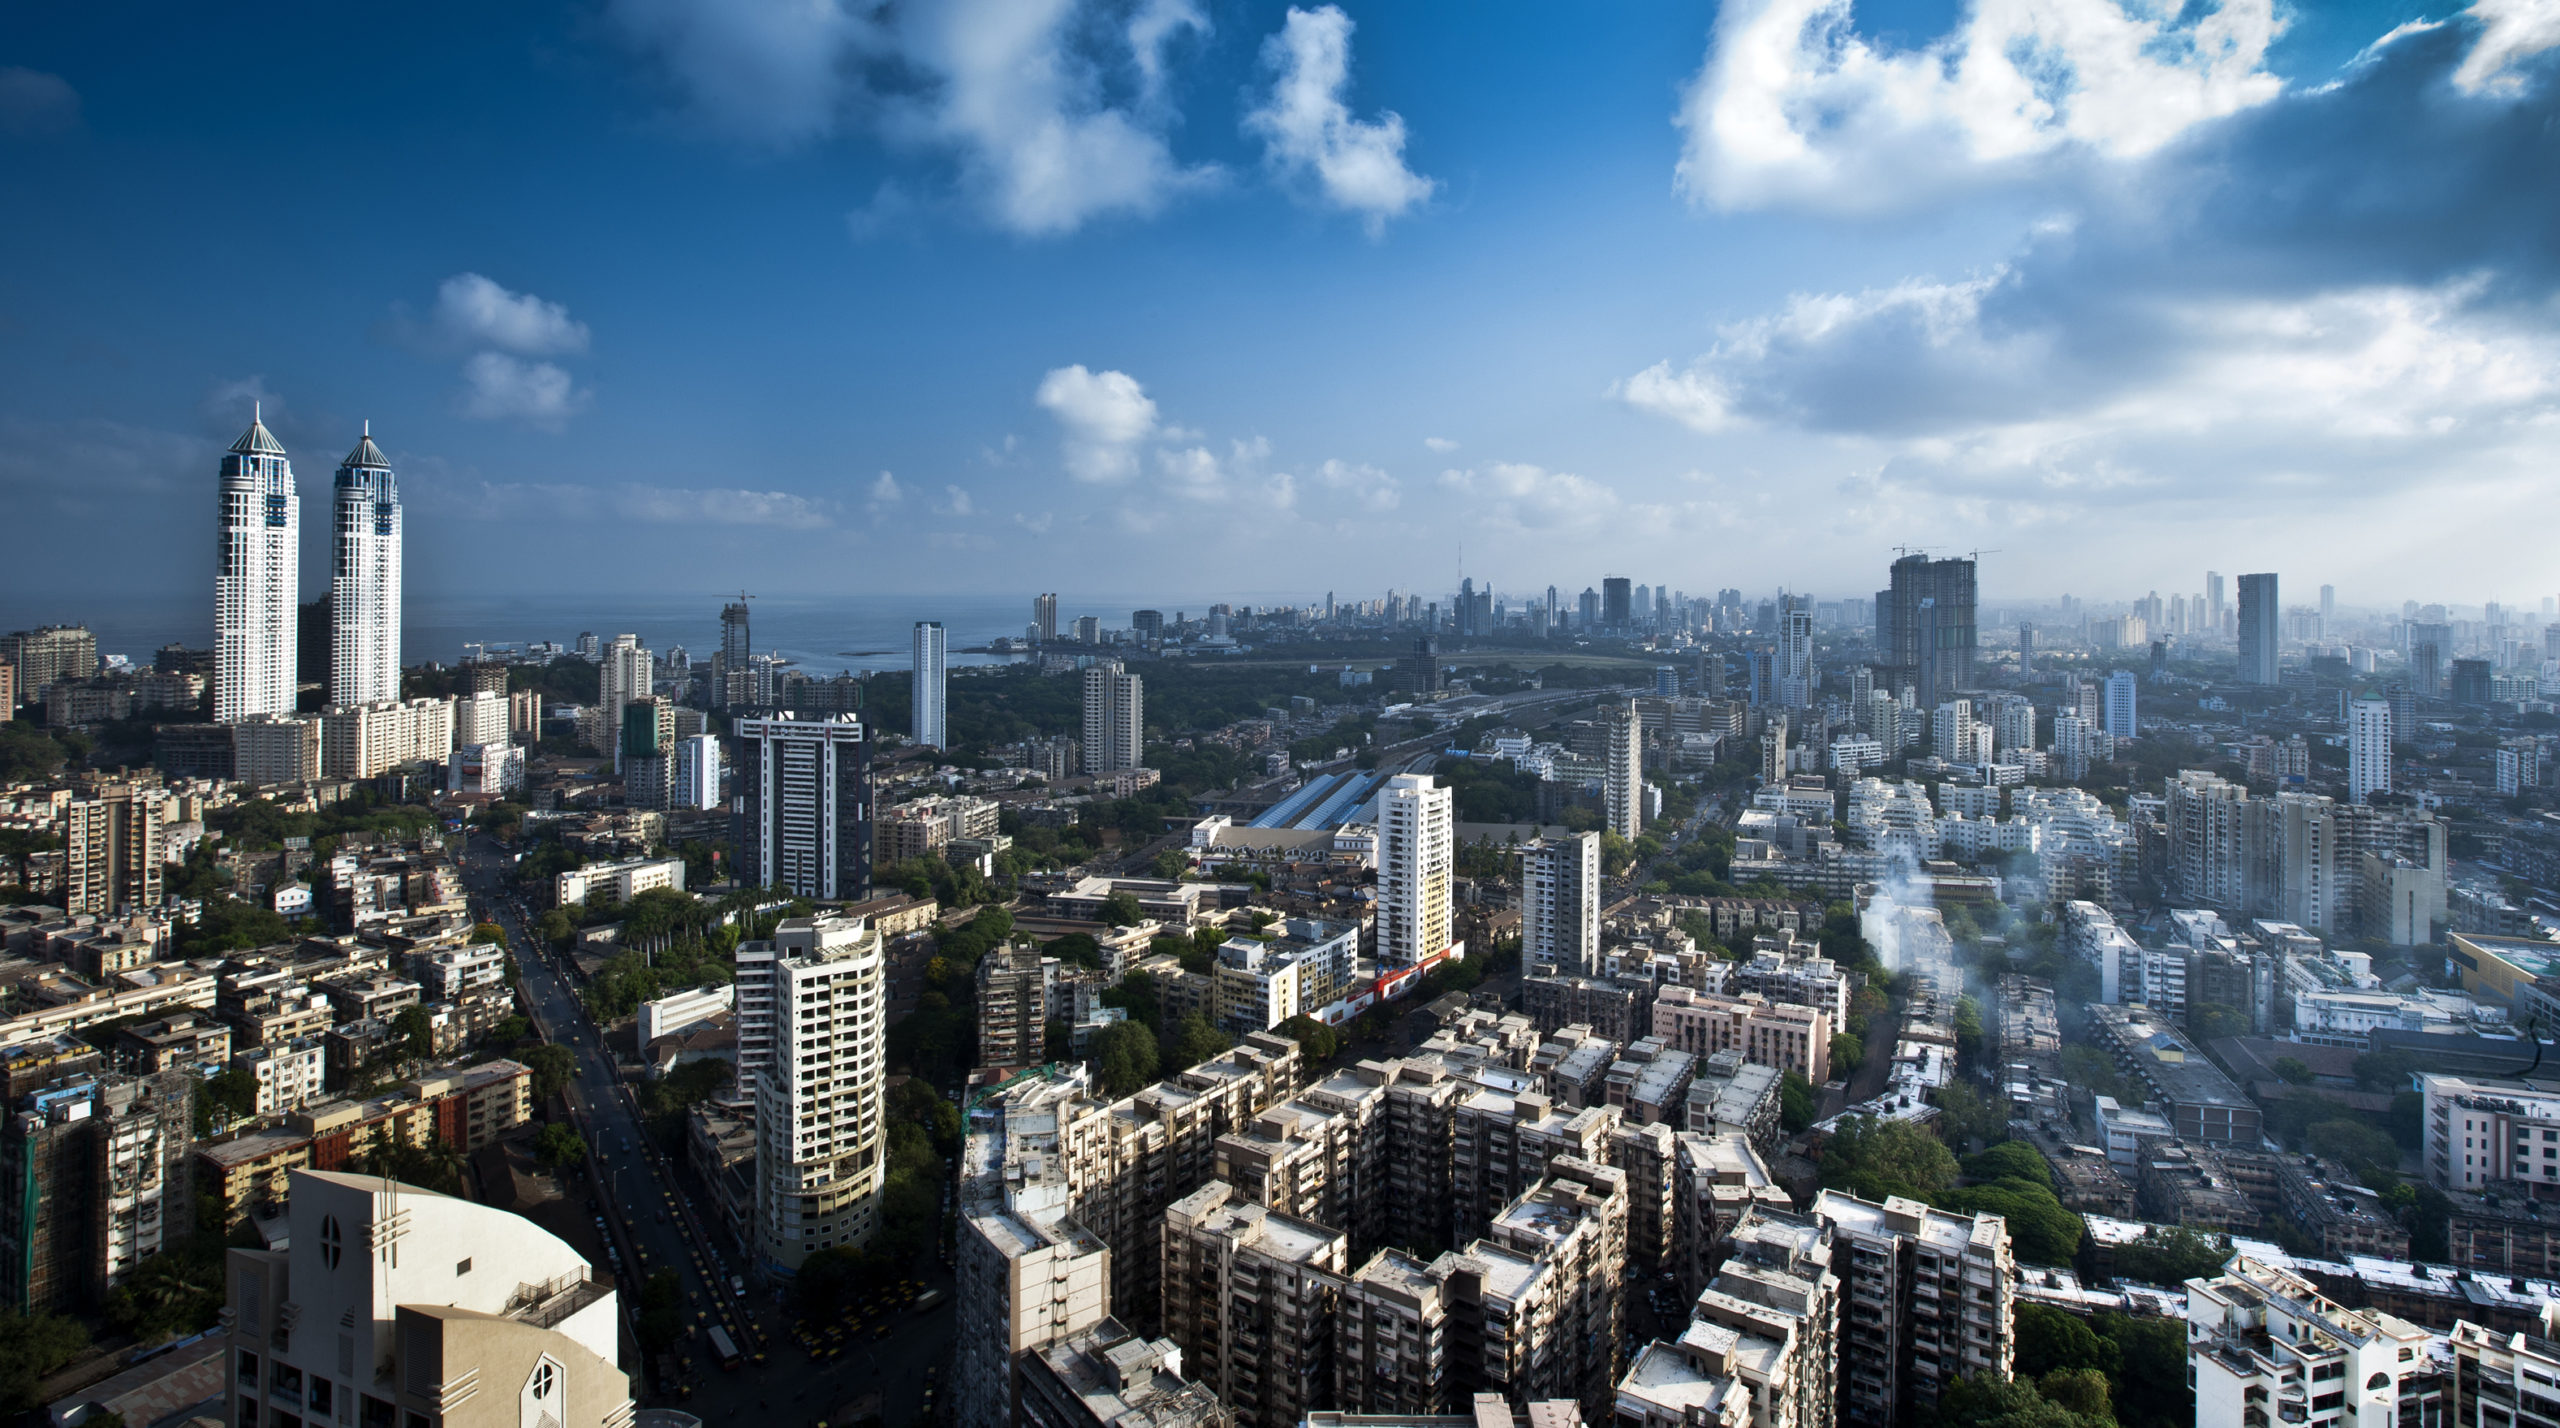 Mumbai Aerial View